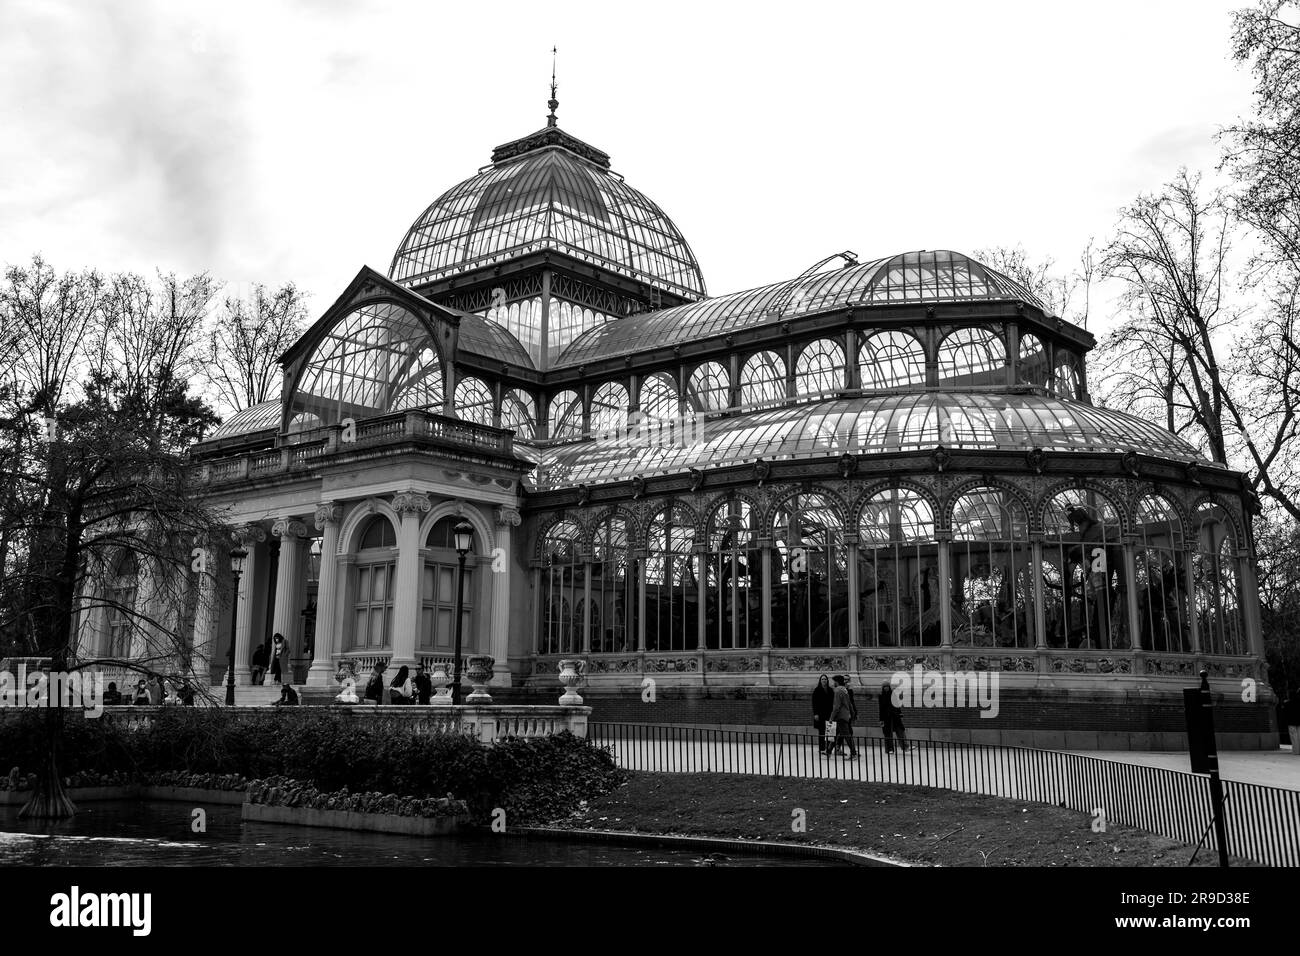 Madrid, Spanien - 16. FEBRUAR 2022: El Palacio de Cristal, der Glaspalast ist ein Konservatorium im Park Buen Retiro in Madrid. Ursprünglich als Stockfoto